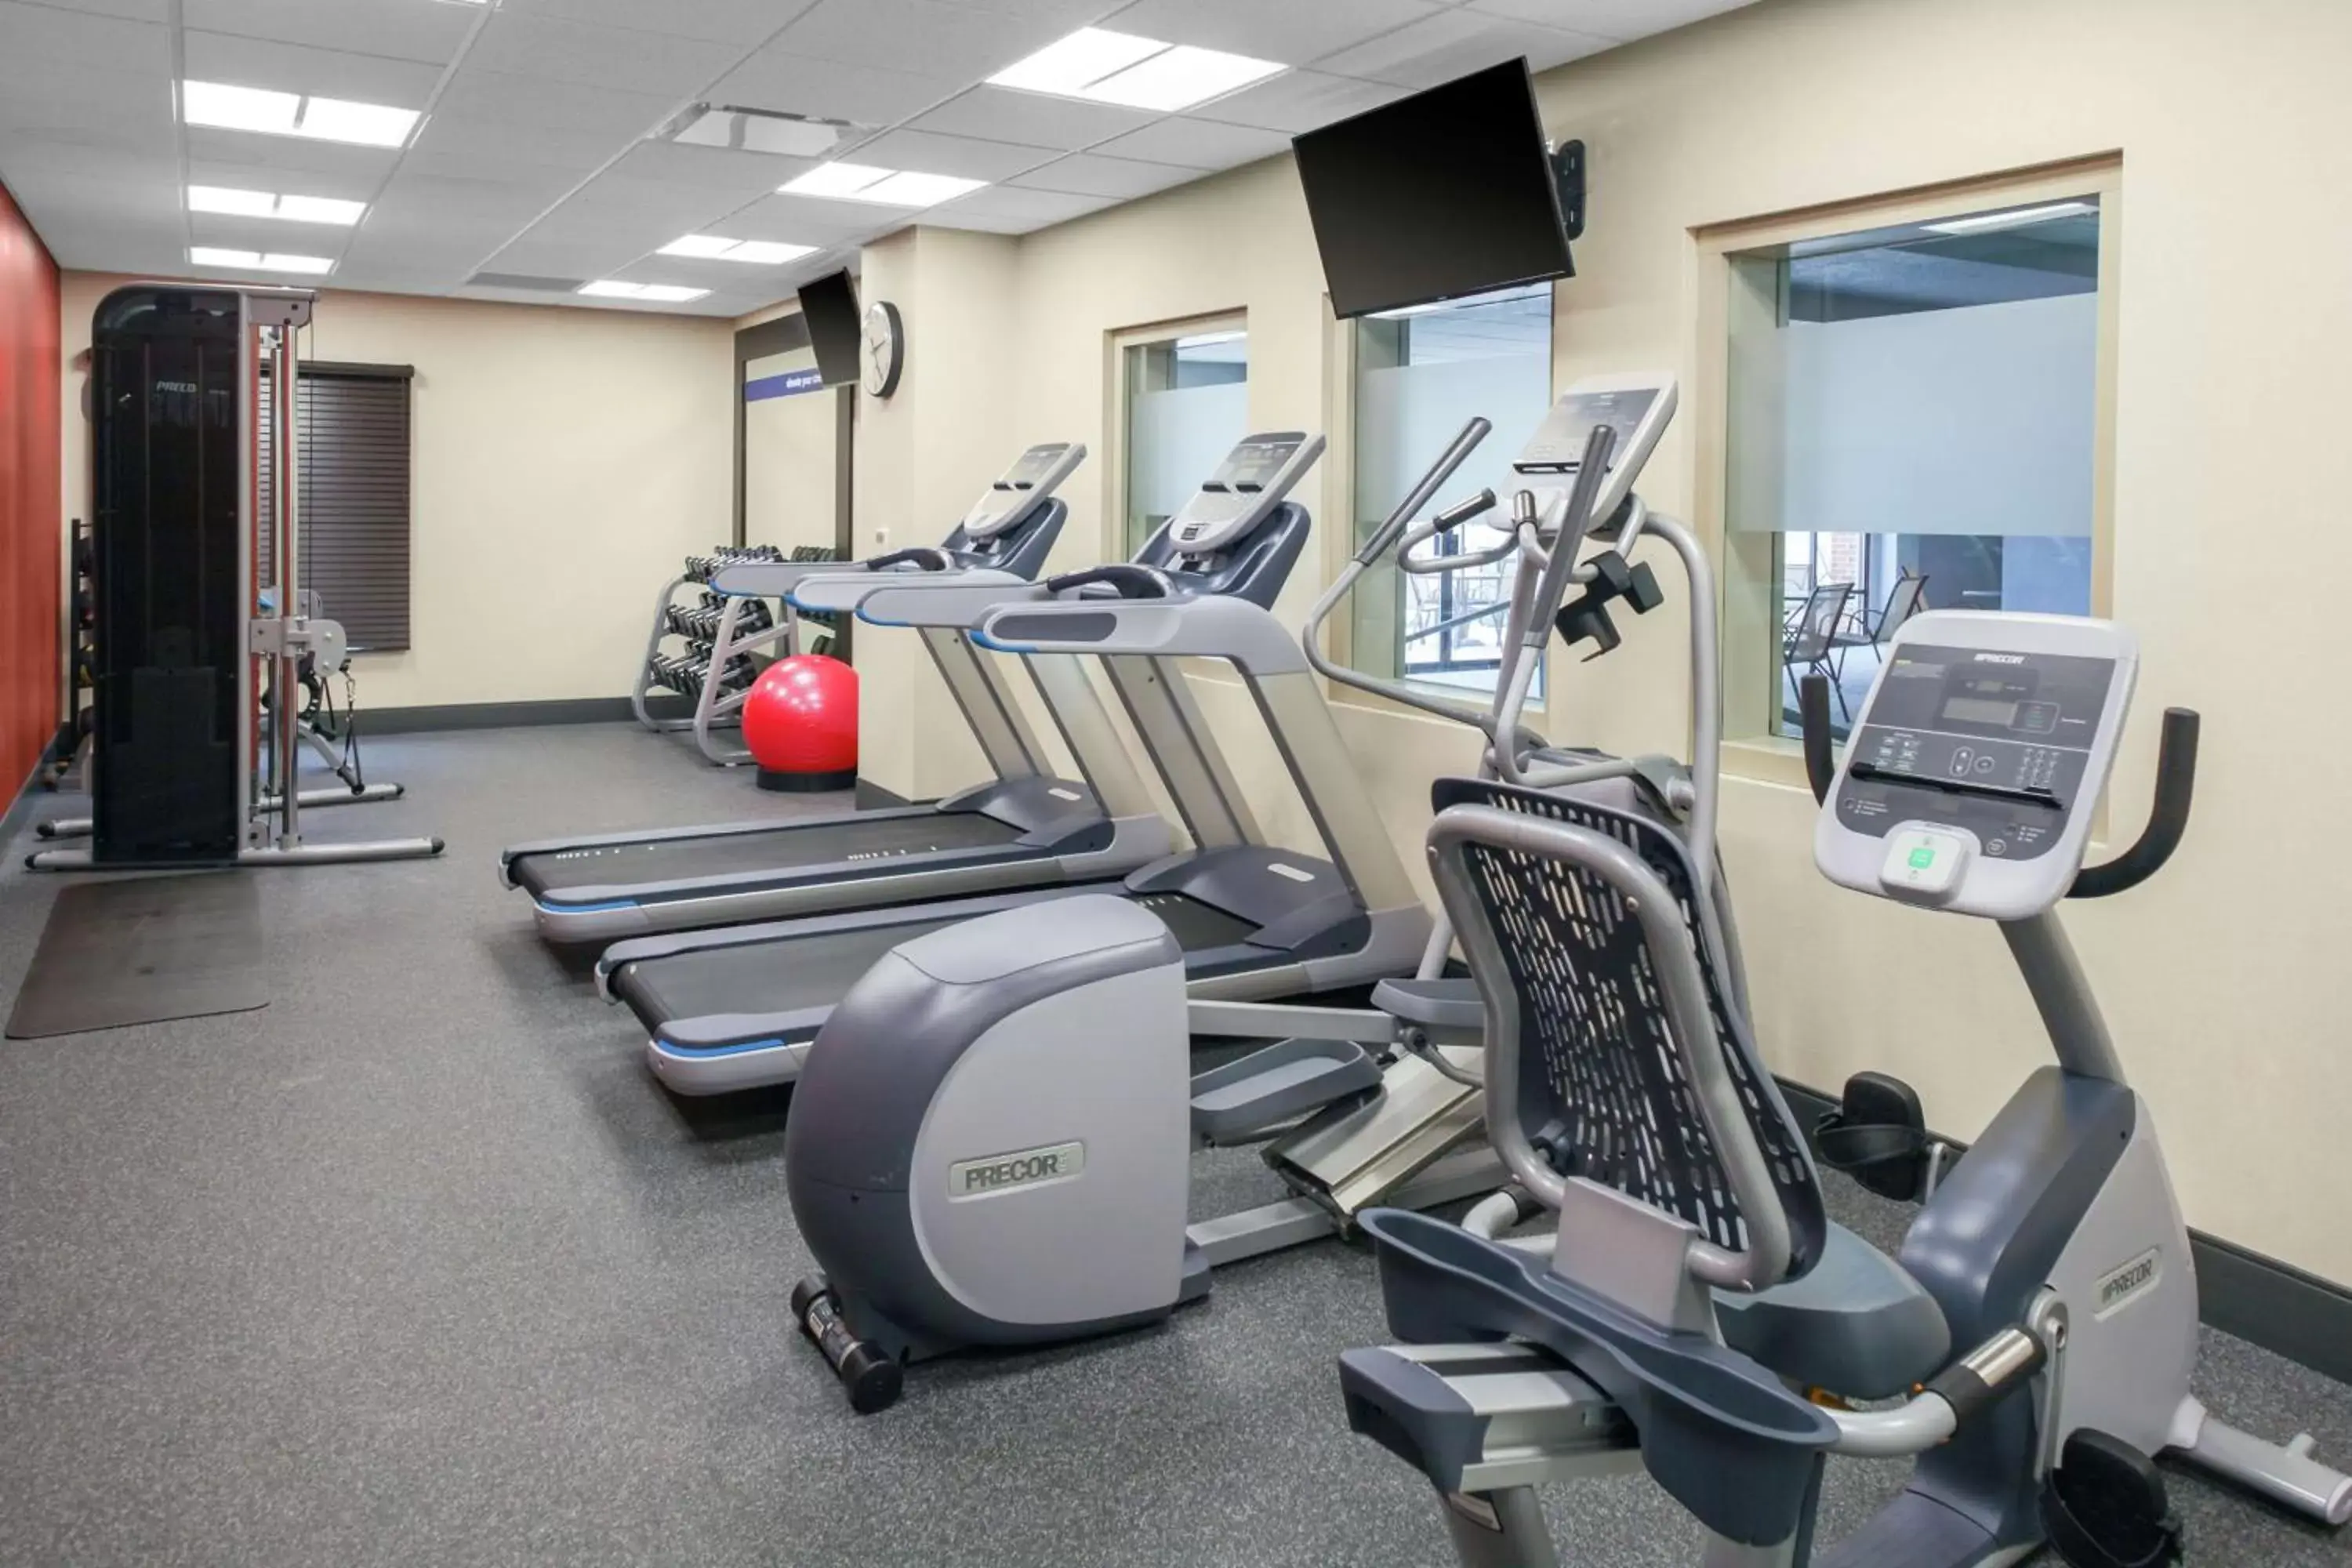 Fitness centre/facilities, Fitness Center/Facilities in Hampton Inn Jasper